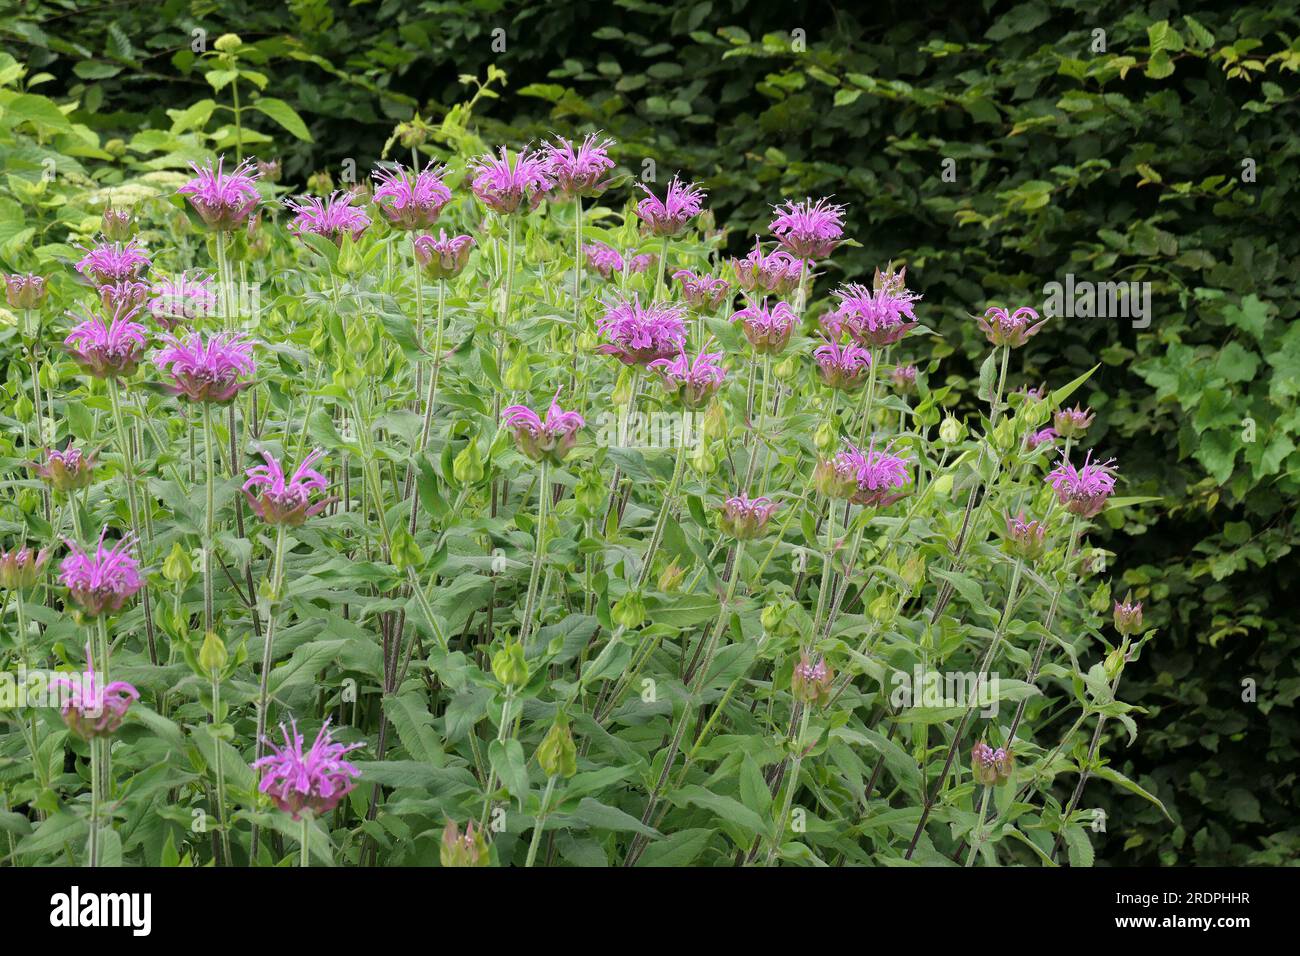 Closeup of the flowering herbaceous garden perennial monarda violet queen or Bergamot Bee balm. Stock Photo